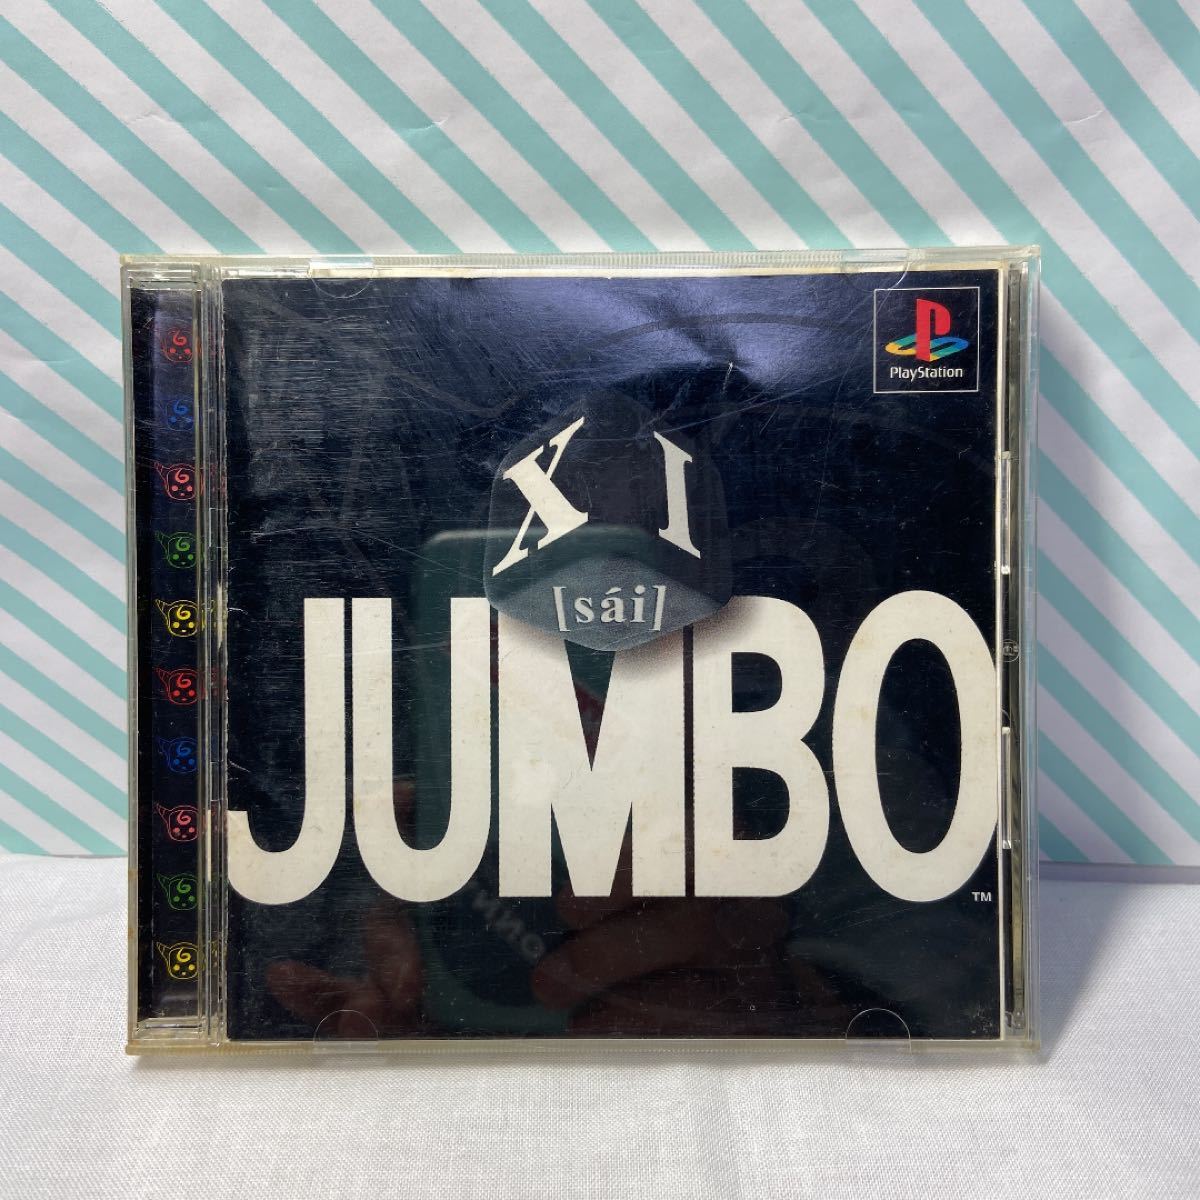 XI［sai］JUMBO (PlayStation,PS,プレステ ソフト)